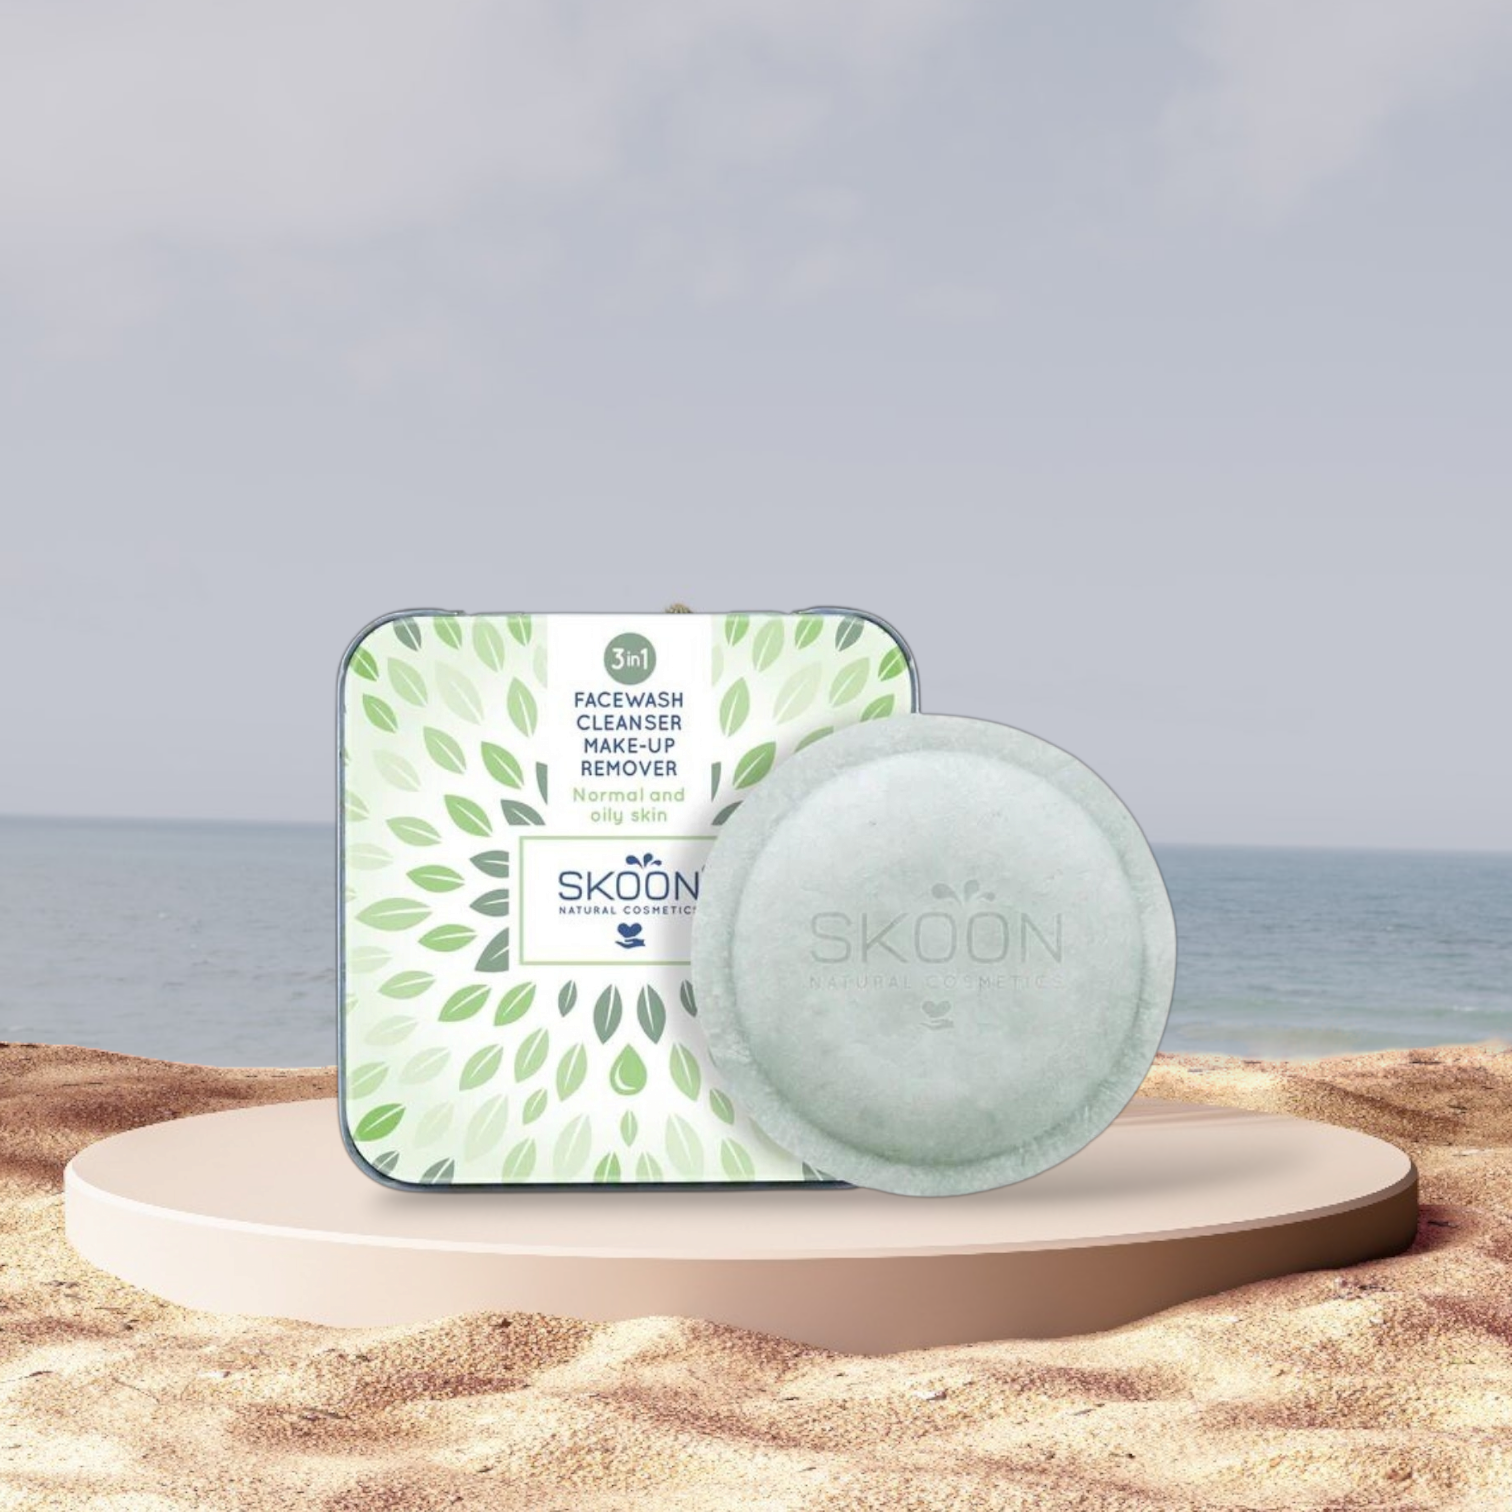 Pureday Two Skoon Facewash, Cleanser og Makeup remover - Normale og fedtede hudprodukter på en cirkulær platform med sandstrand og havbaggrund. Produkterne er en ansigtsvask i dåse og en pureday sæbebar.